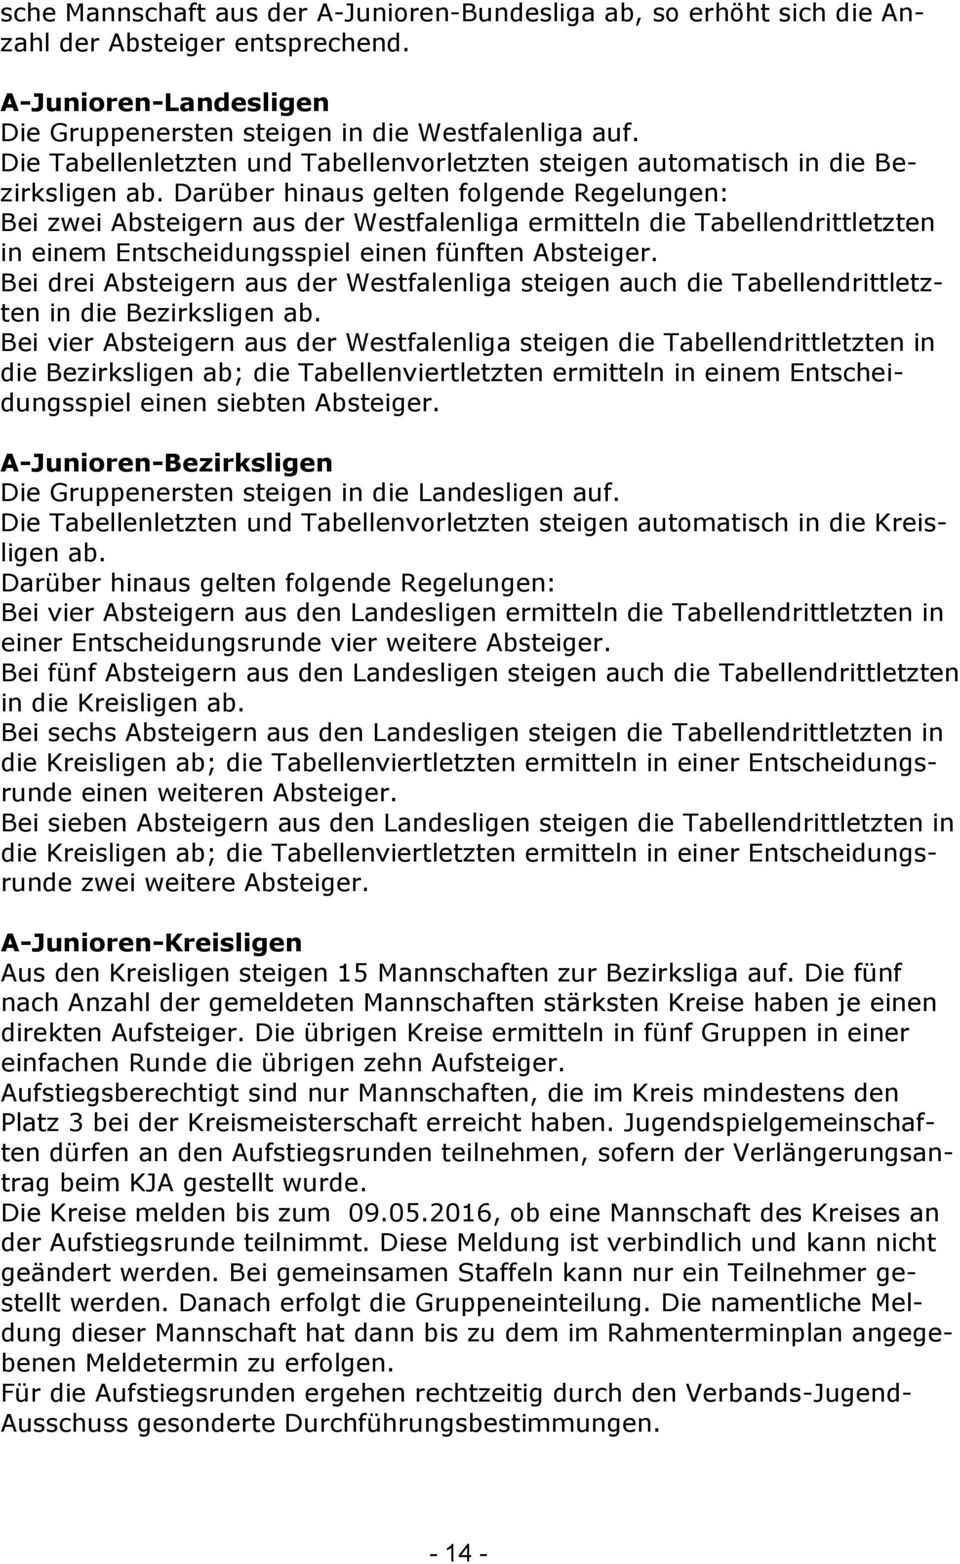 Darüber hinaus gelten folgende Regelungen: Bei zwei Absteigern aus der Westfalenliga ermitteln die Tabellendrittletzten in einem Entscheidungsspiel einen fünften Absteiger.